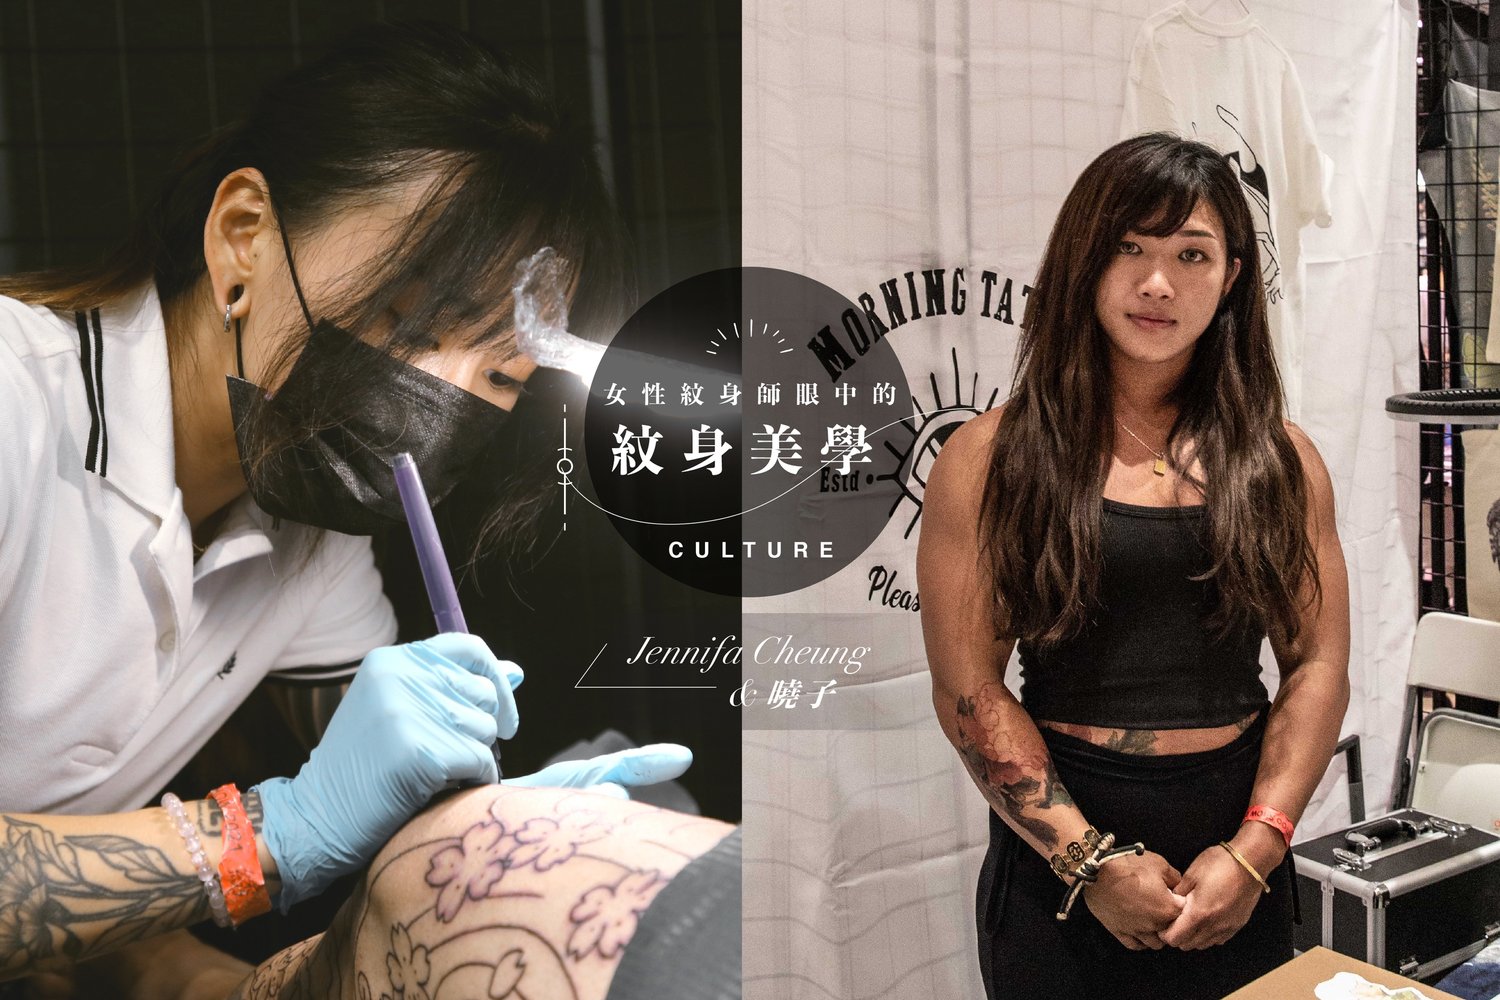 躍現在皮膚上的藝術品_專訪女紋身師_Jennifa_Cheung_曉子，以別樣角度窺探紋身的另類美學_tattoo.jpg